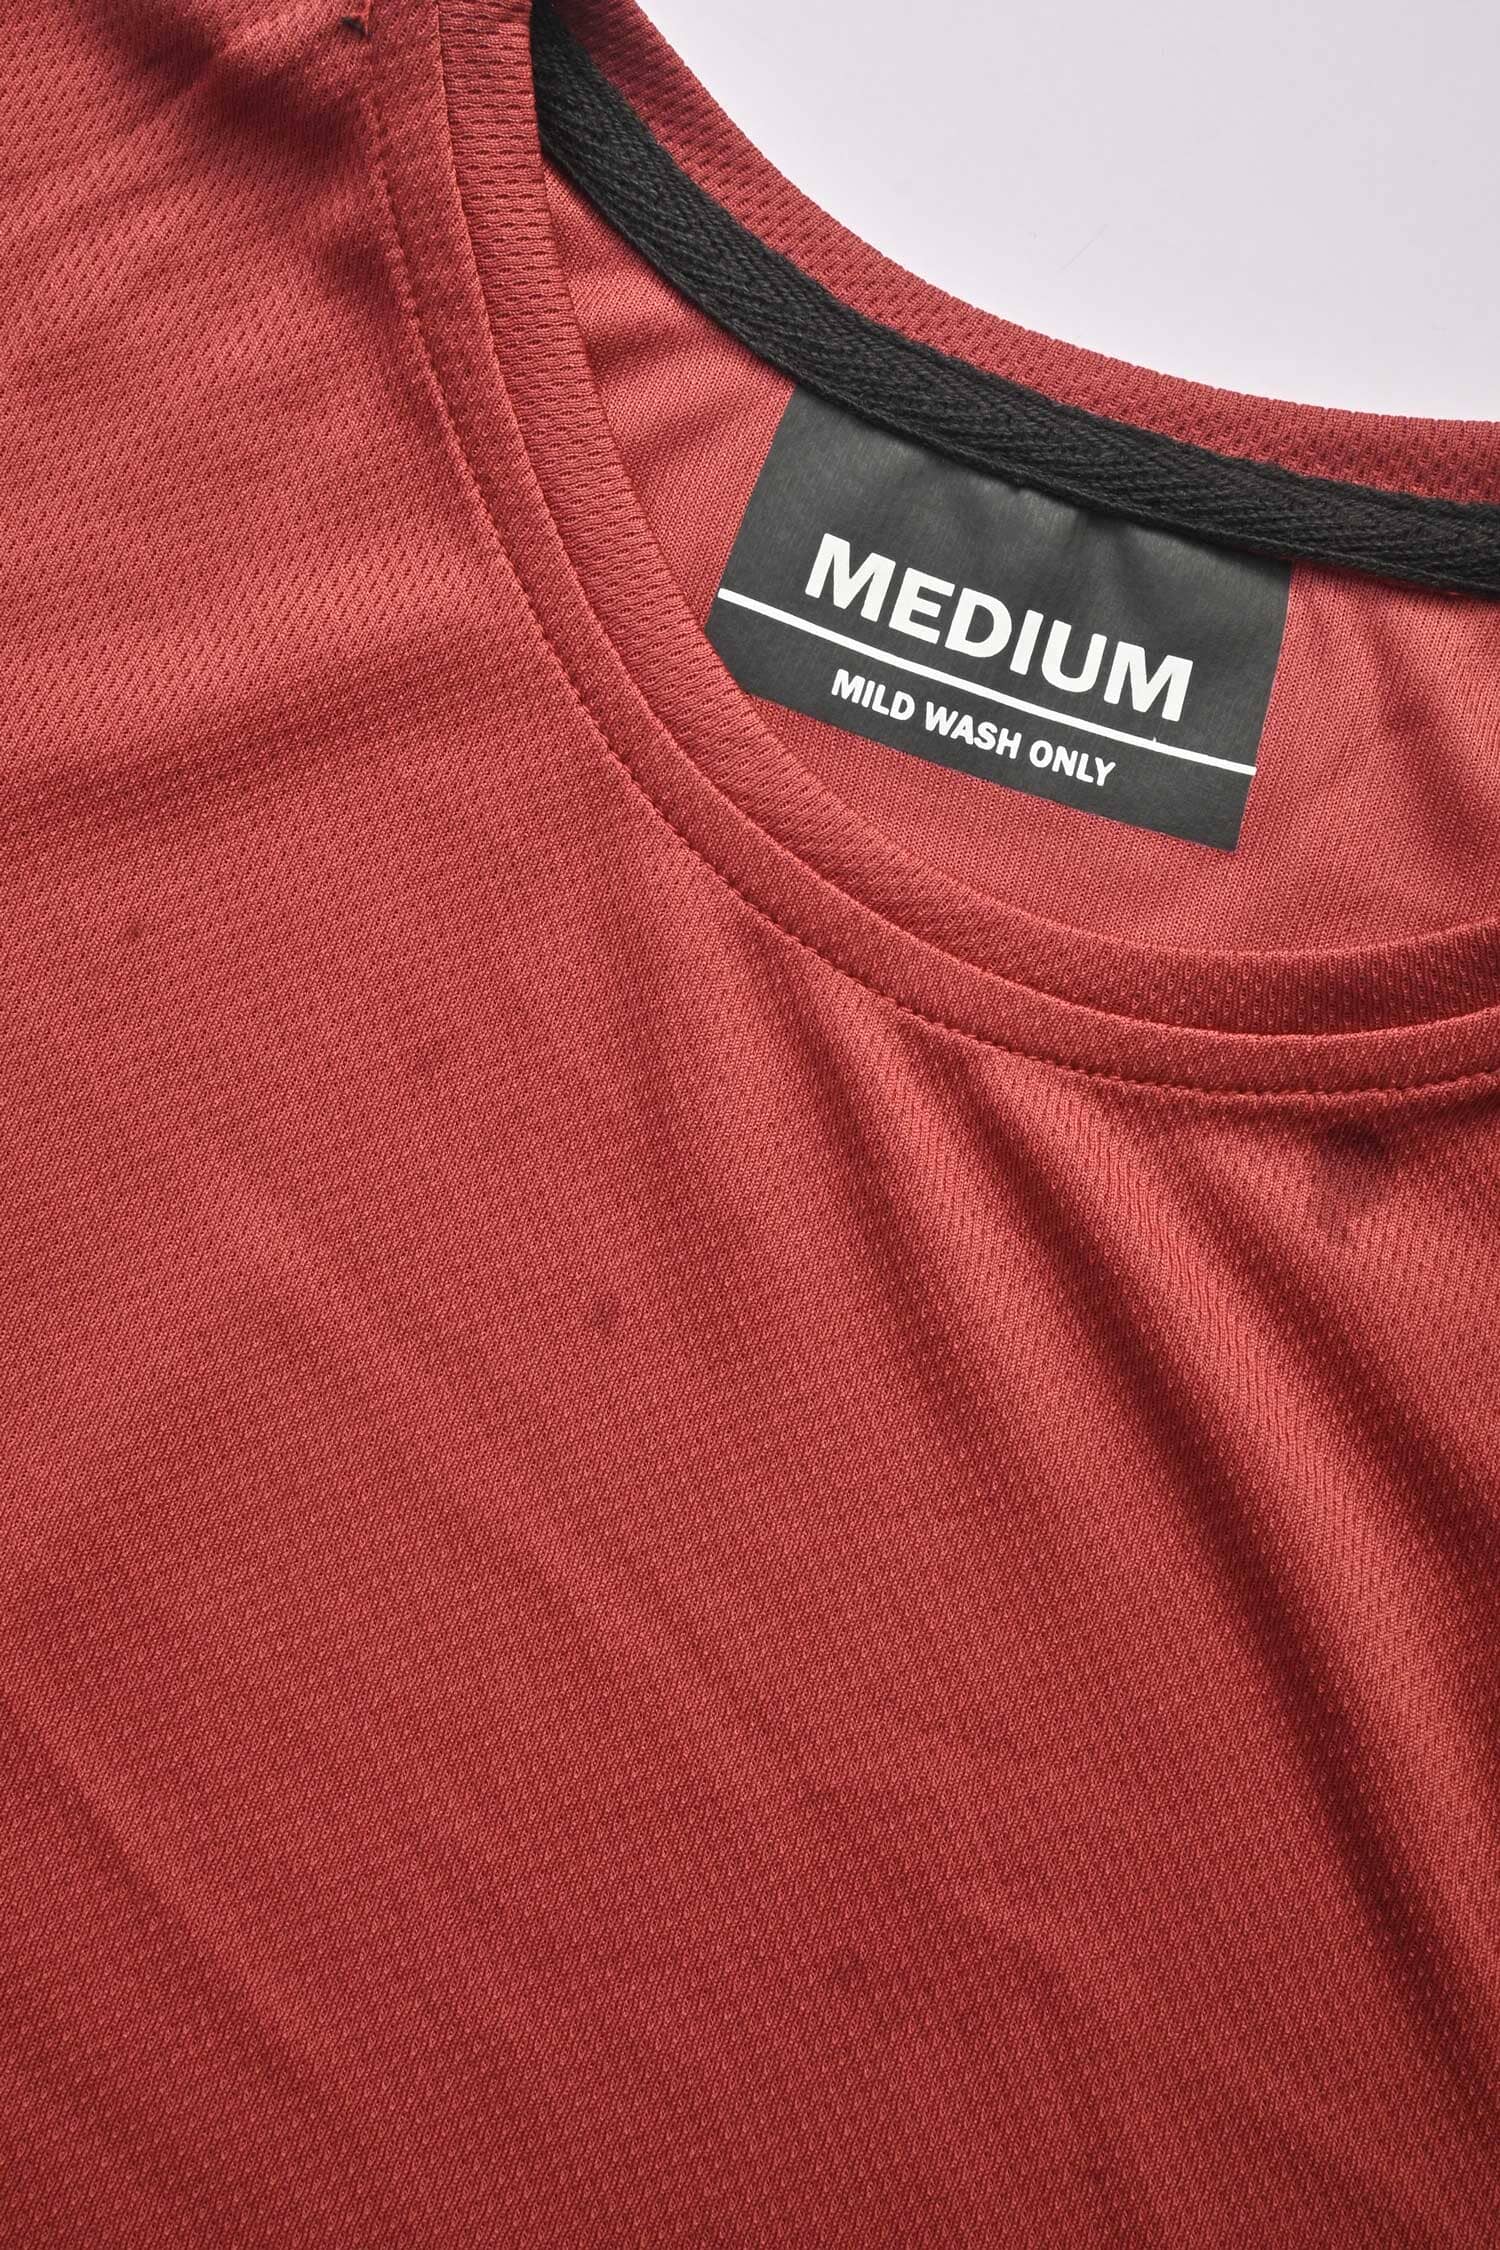 Men's Solid Design Activewear Crew Neck Minor Fault Tee Shirt